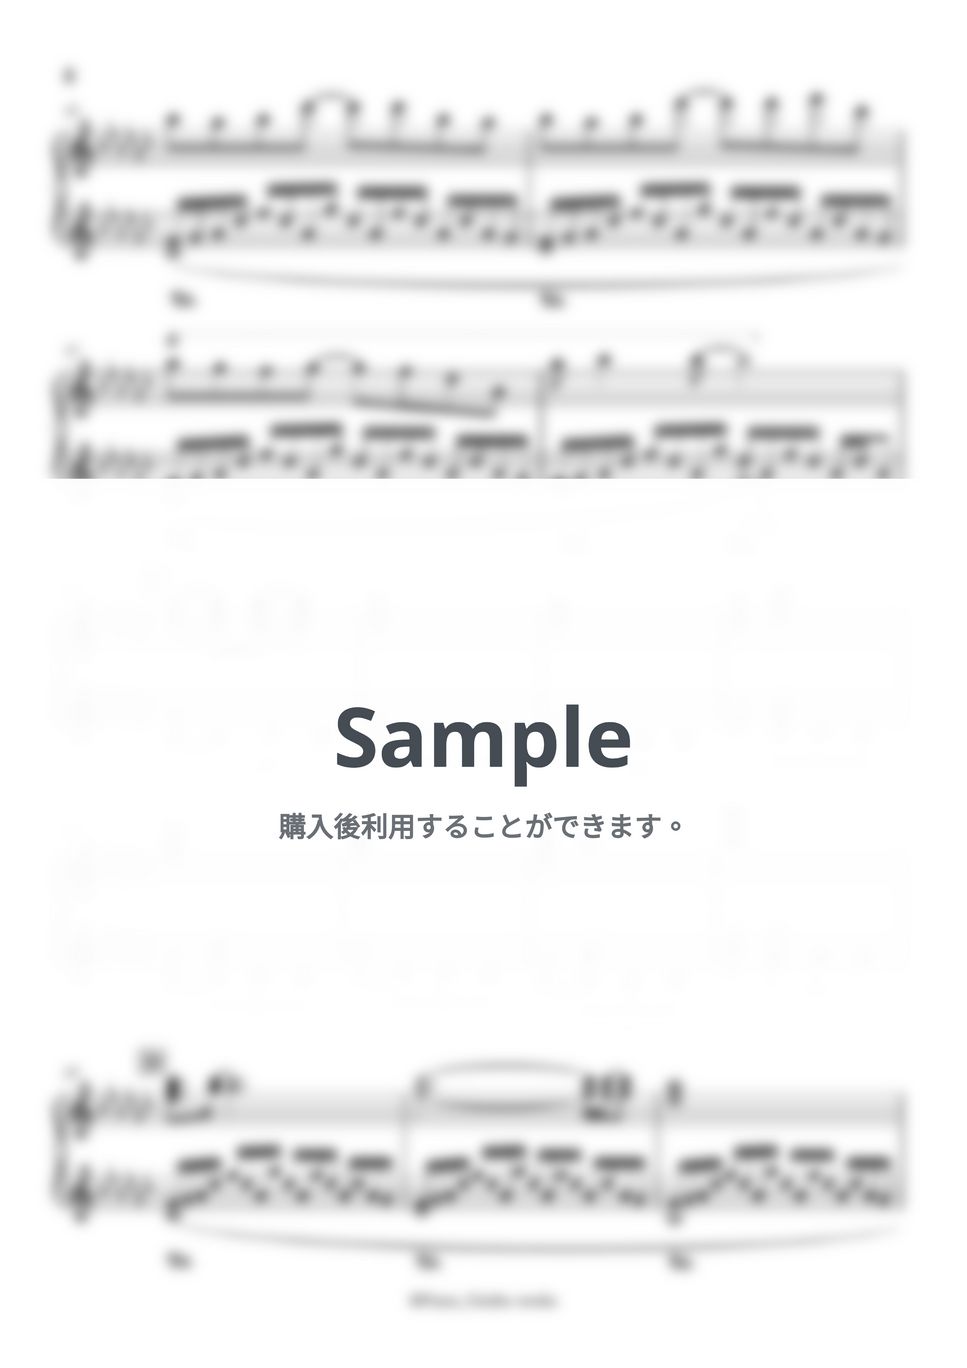 横山 克 - アゲイン「四月は君の嘘」OST by Pianoうーみho